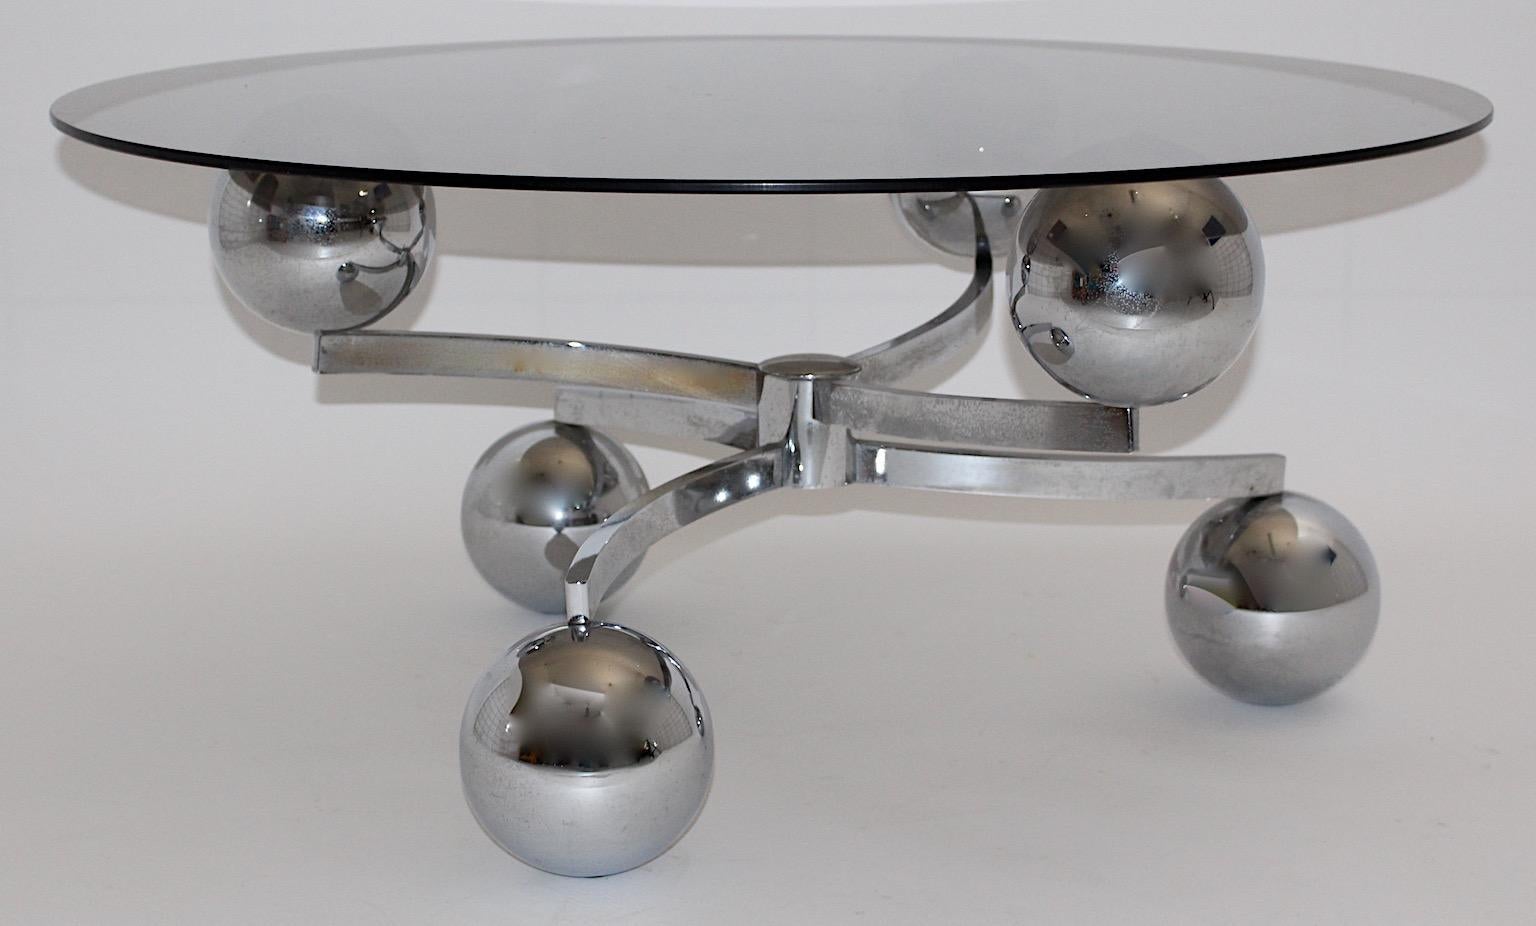 Table de canapé ou table basse vintage Space AGE en métal chromé façon Sputnik avec plateau en verre circa 1970.
Une table de canapé avec une base en métal chromé qui montre un mouvement et un dynamisme fantastiques.
Alors que la base présente des